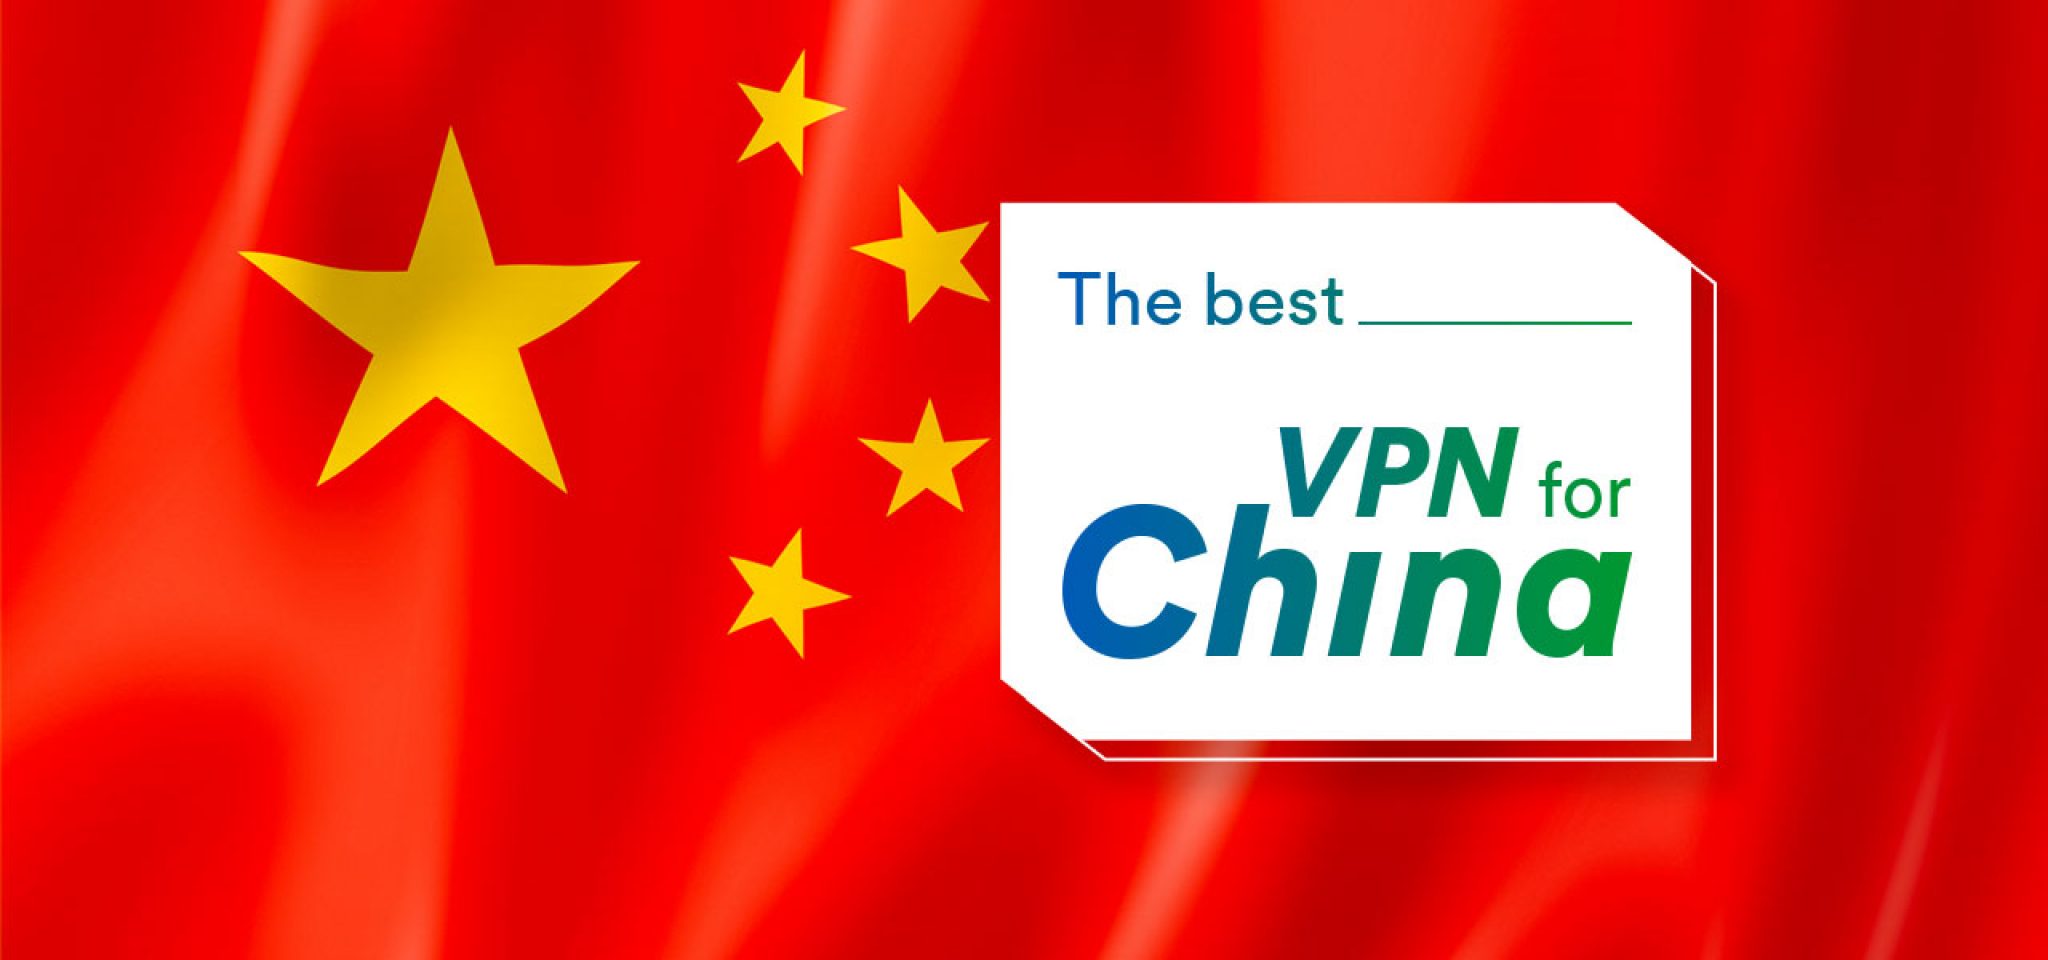 cuenta en vpn for china